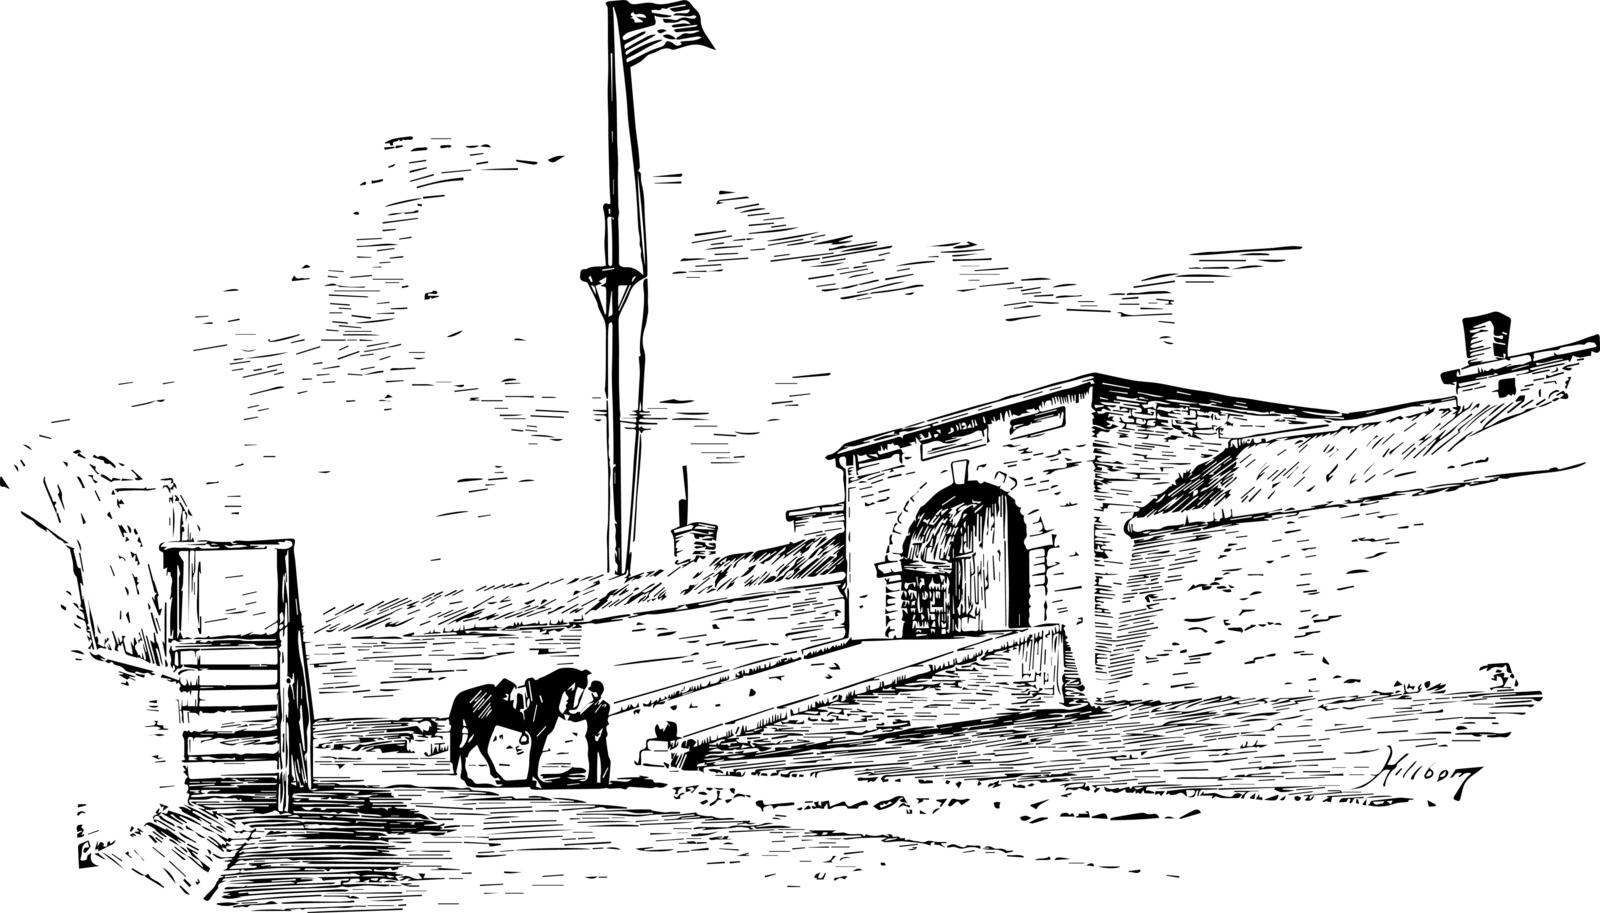 Sallyport at Fort McHenry vintage illustration by Morphart